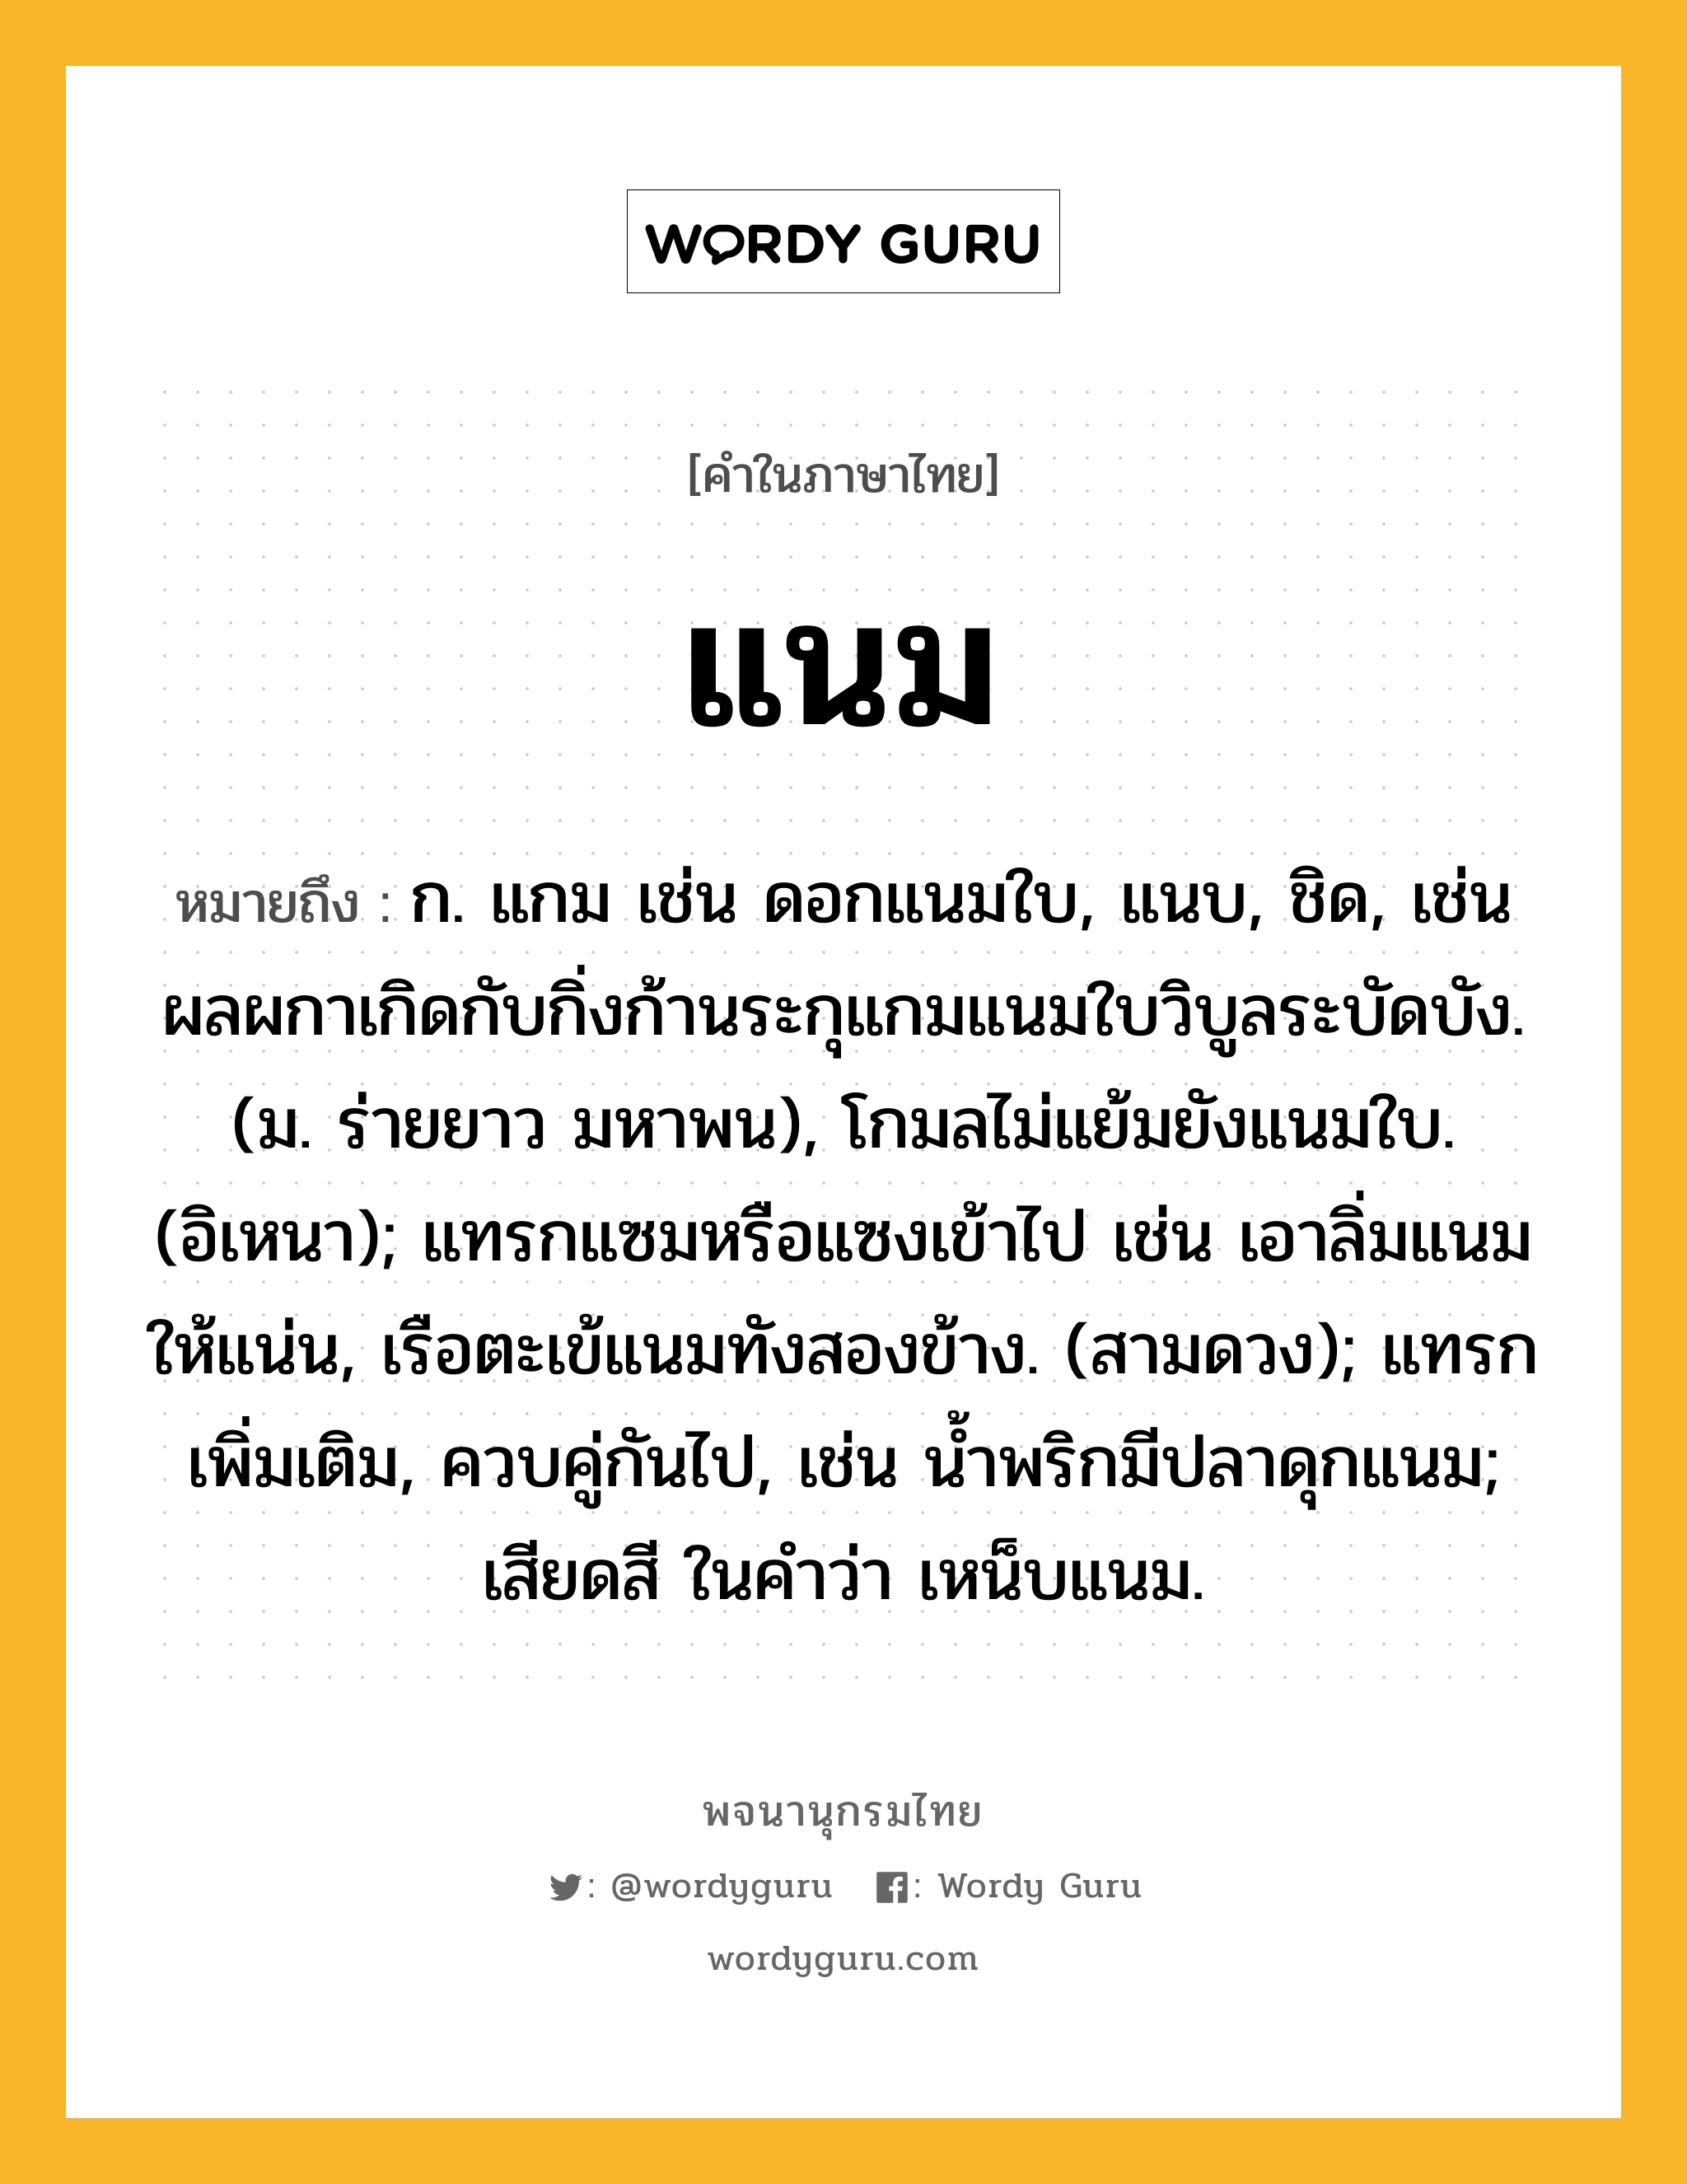 แนม ความหมาย หมายถึงอะไร?, คำในภาษาไทย แนม หมายถึง ก. แกม เช่น ดอกแนมใบ, แนบ, ชิด, เช่น ผลผกาเกิดกับกิ่งก้านระกุแกมแนมใบวิบูลระบัดบัง. (ม. ร่ายยาว มหาพน), โกมลไม่แย้มยังแนมใบ. (อิเหนา); แทรกแซมหรือแซงเข้าไป เช่น เอาลิ่มแนมให้แน่น, เรือตะเข้แนมทังสองข้าง. (สามดวง); แทรกเพิ่มเติม, ควบคู่กันไป, เช่น นํ้าพริกมีปลาดุกแนม; เสียดสี ในคำว่า เหน็บแนม.